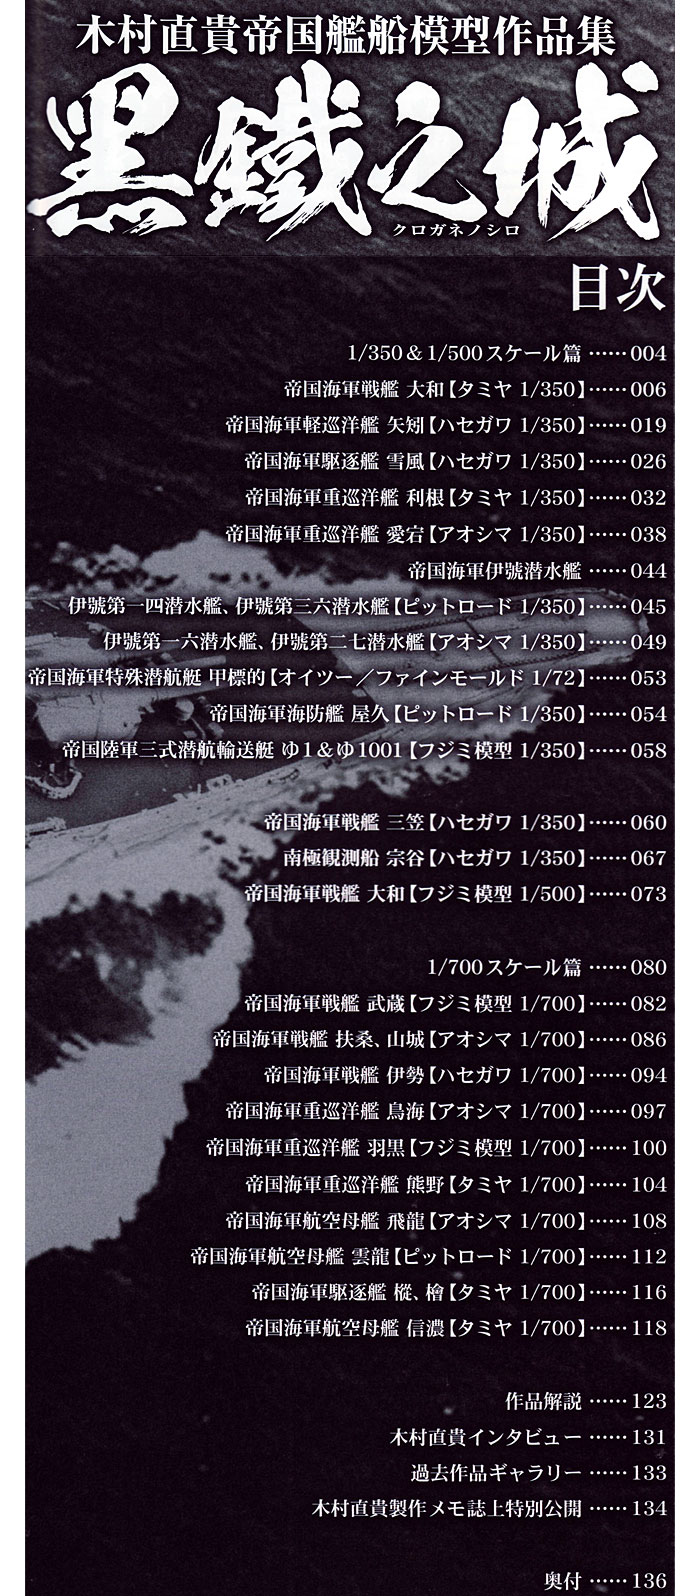 黒鐵之城 木村直貴帝国艦船模型作品集 本 (ホビージャパン HOBBY JAPAN MOOK No.0498) 商品画像_1